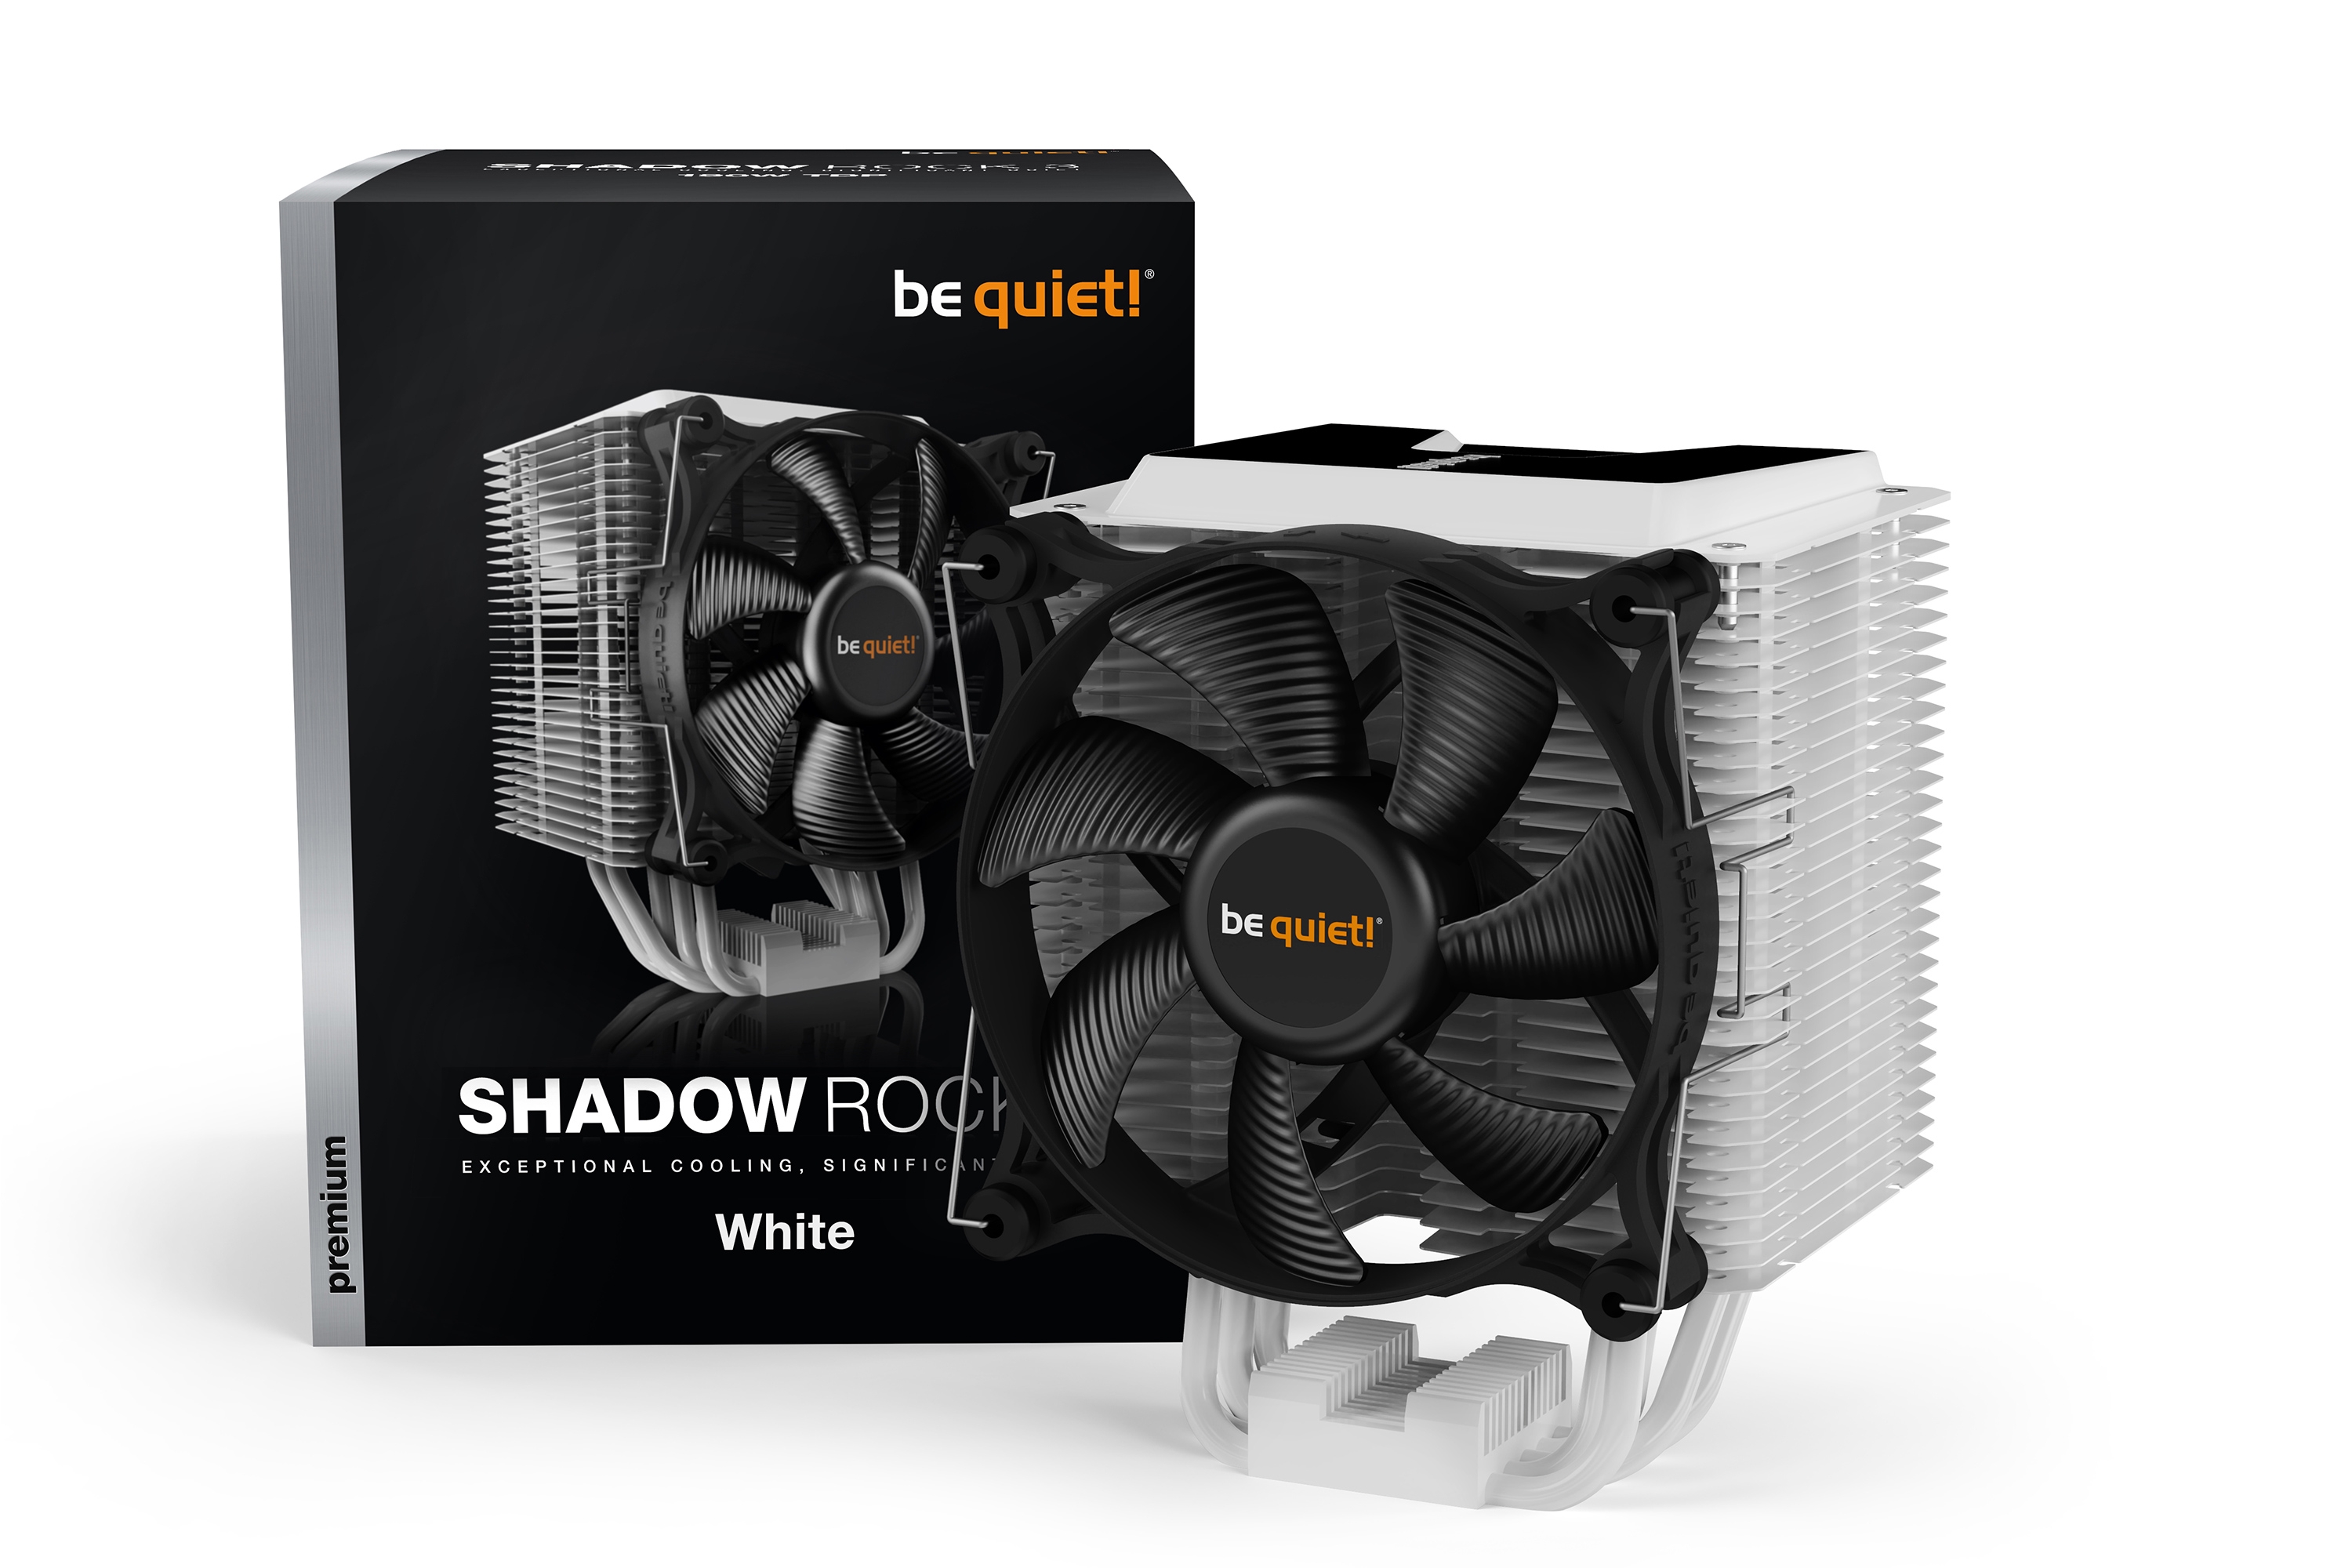 Be quiet! Shadow Rock 3 White AM4 / LGA1151 / LGA1200